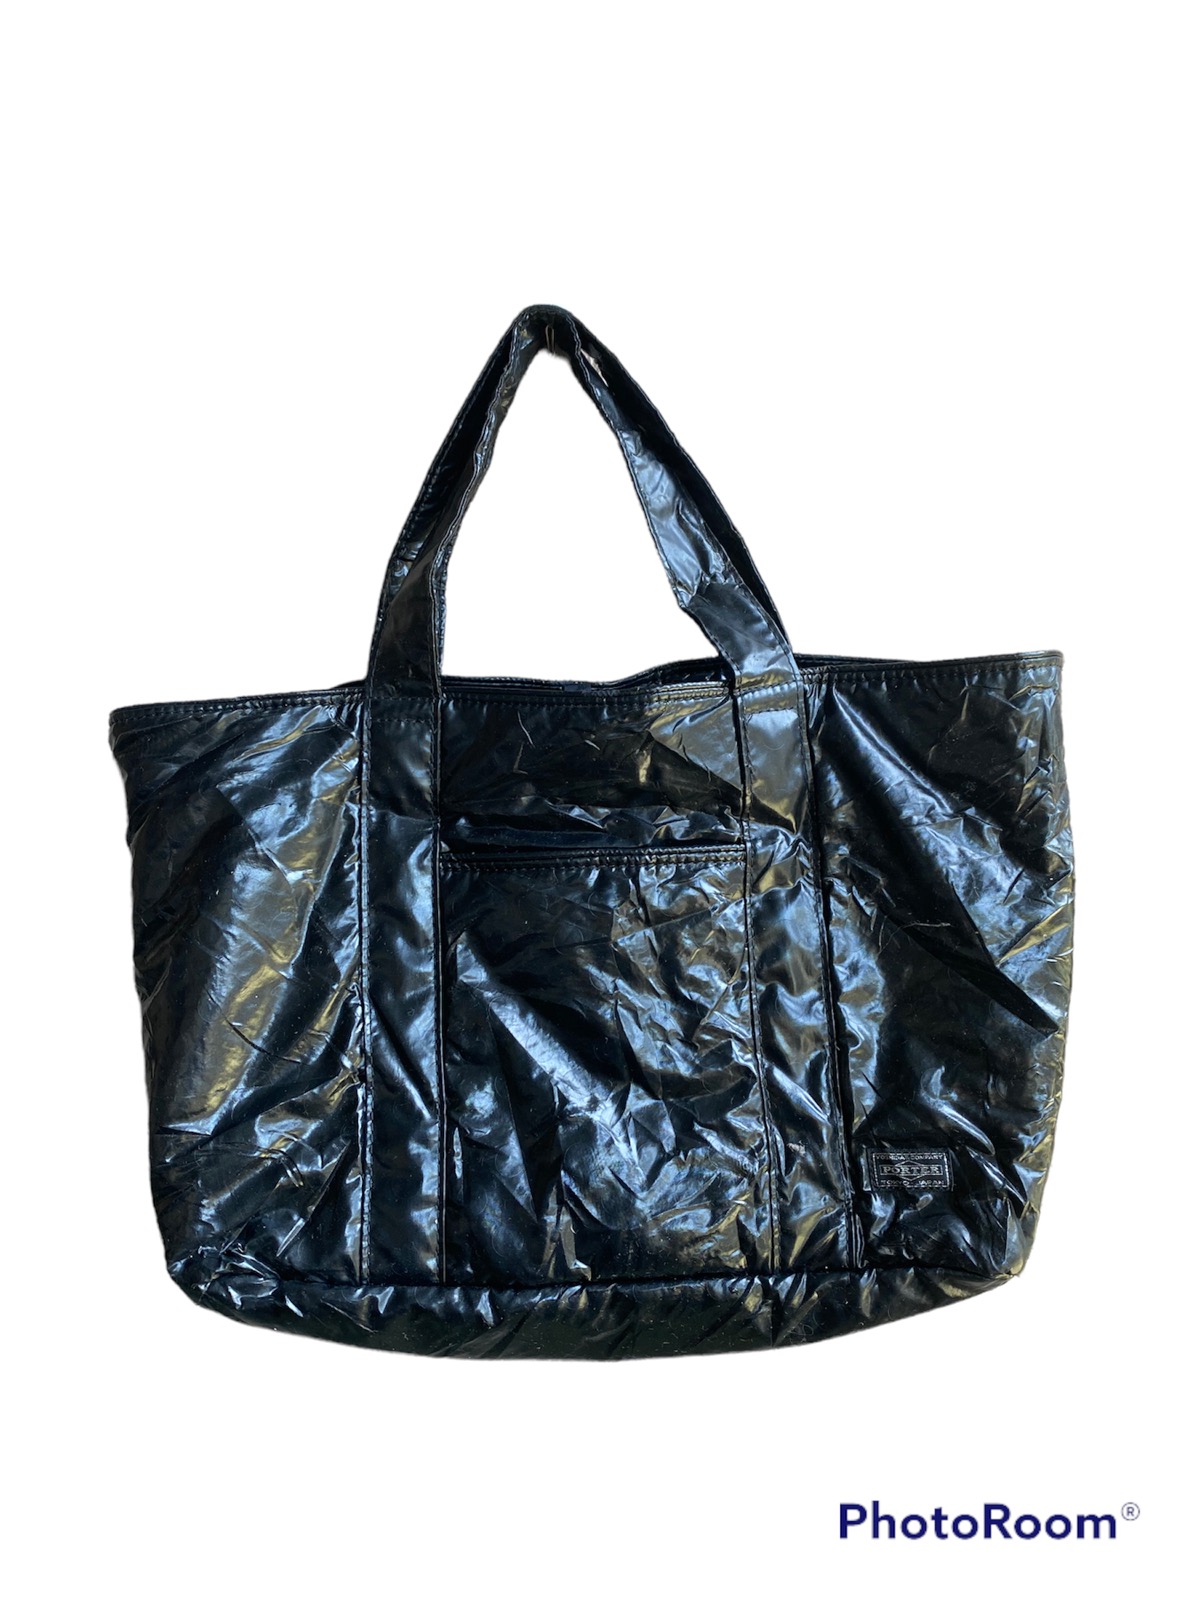 Japanese Brand - Porter Girl Carry Bag - 1